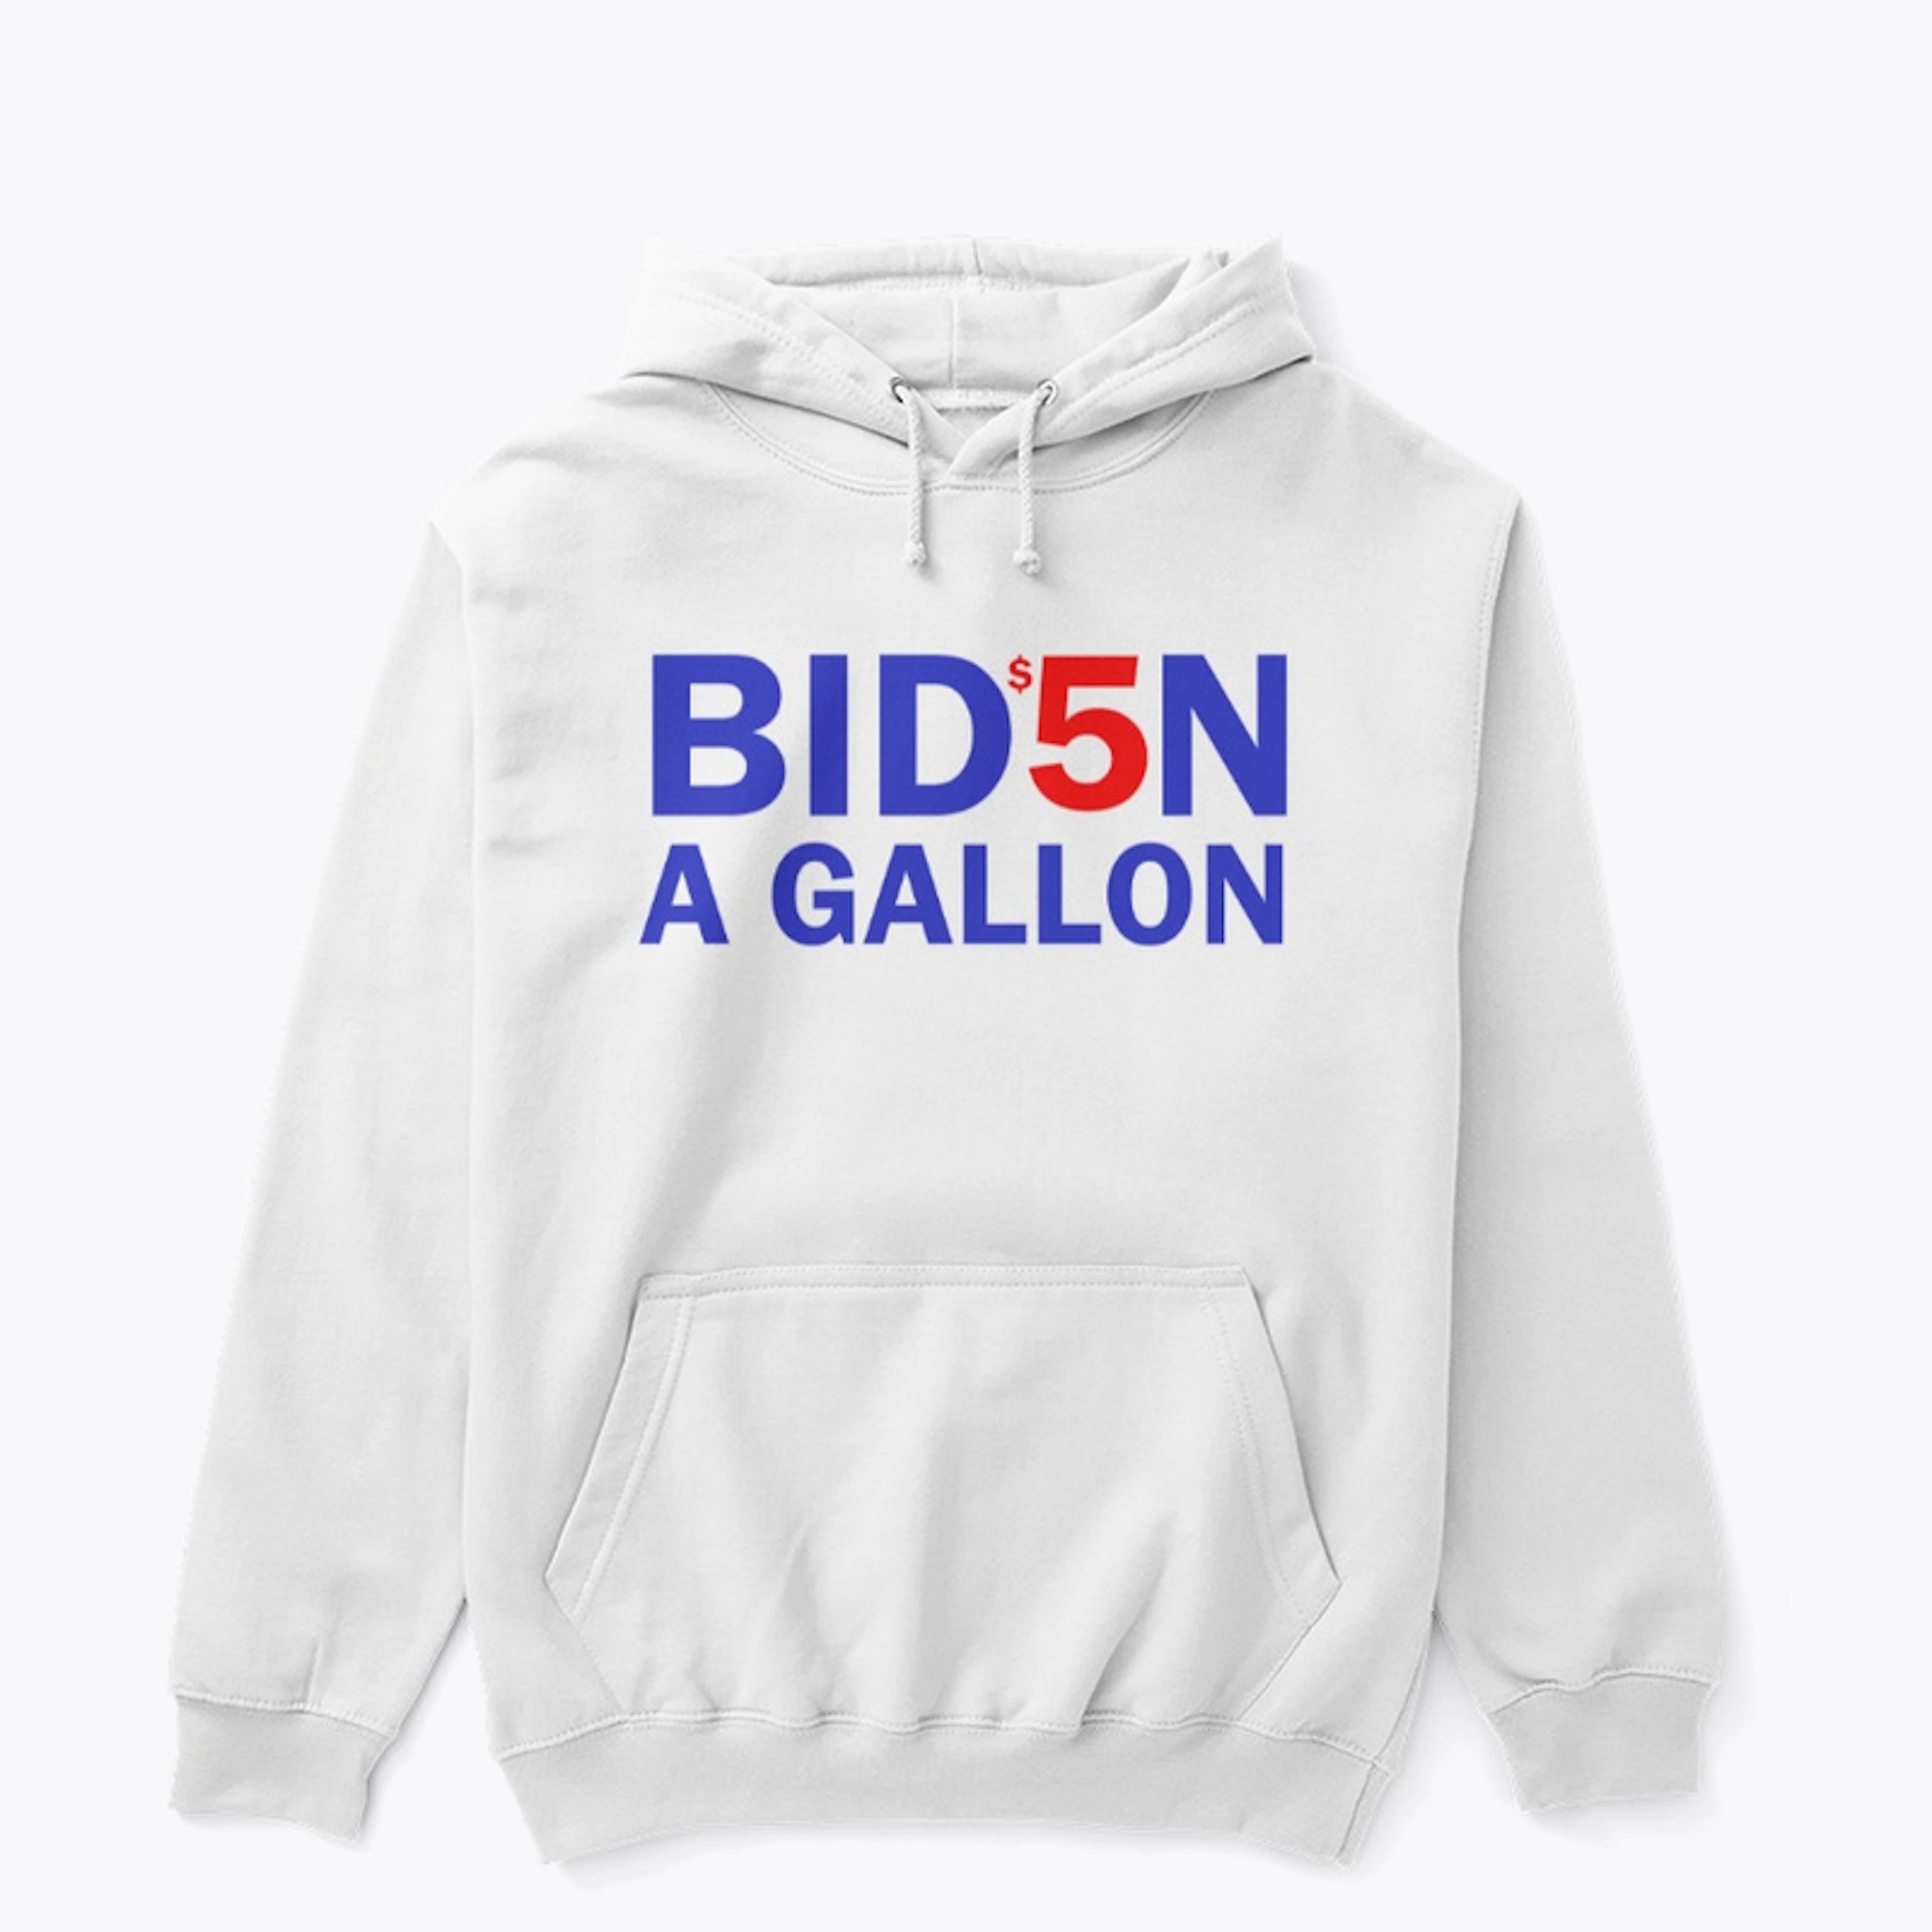 $5 a Gallon Biden